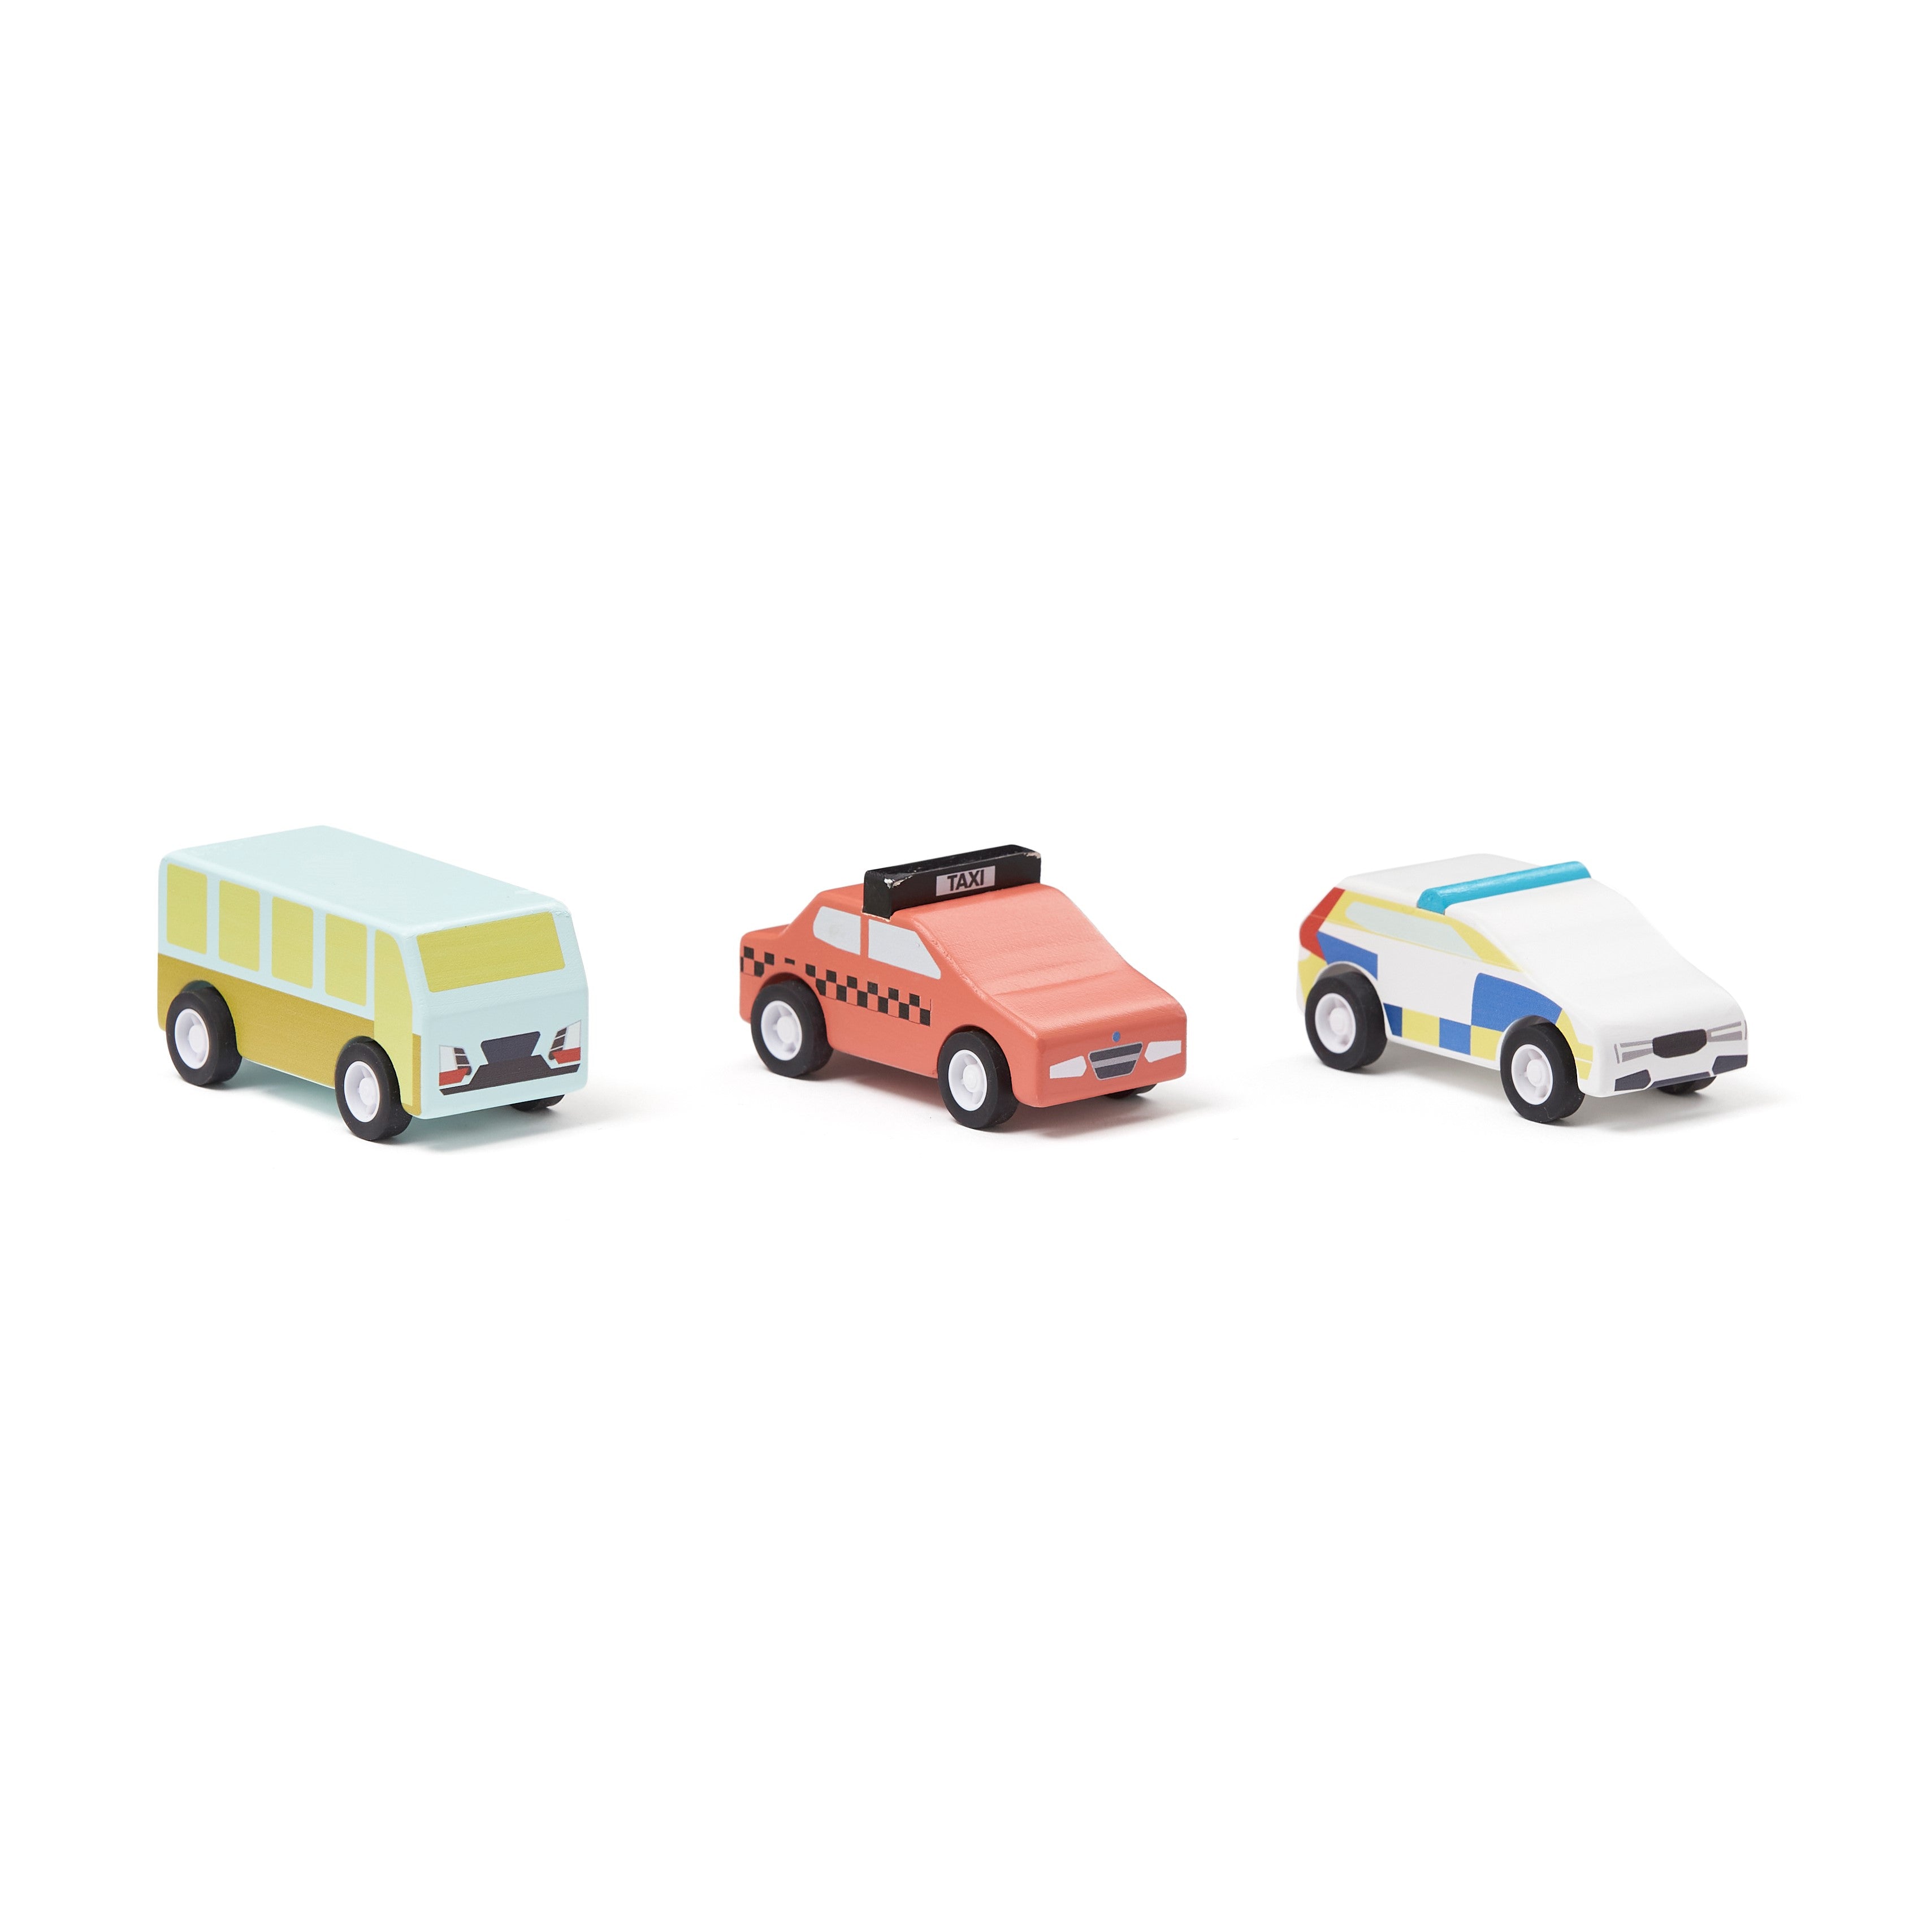 Gyorsuló autók a Kids Concept márkától - pippadu